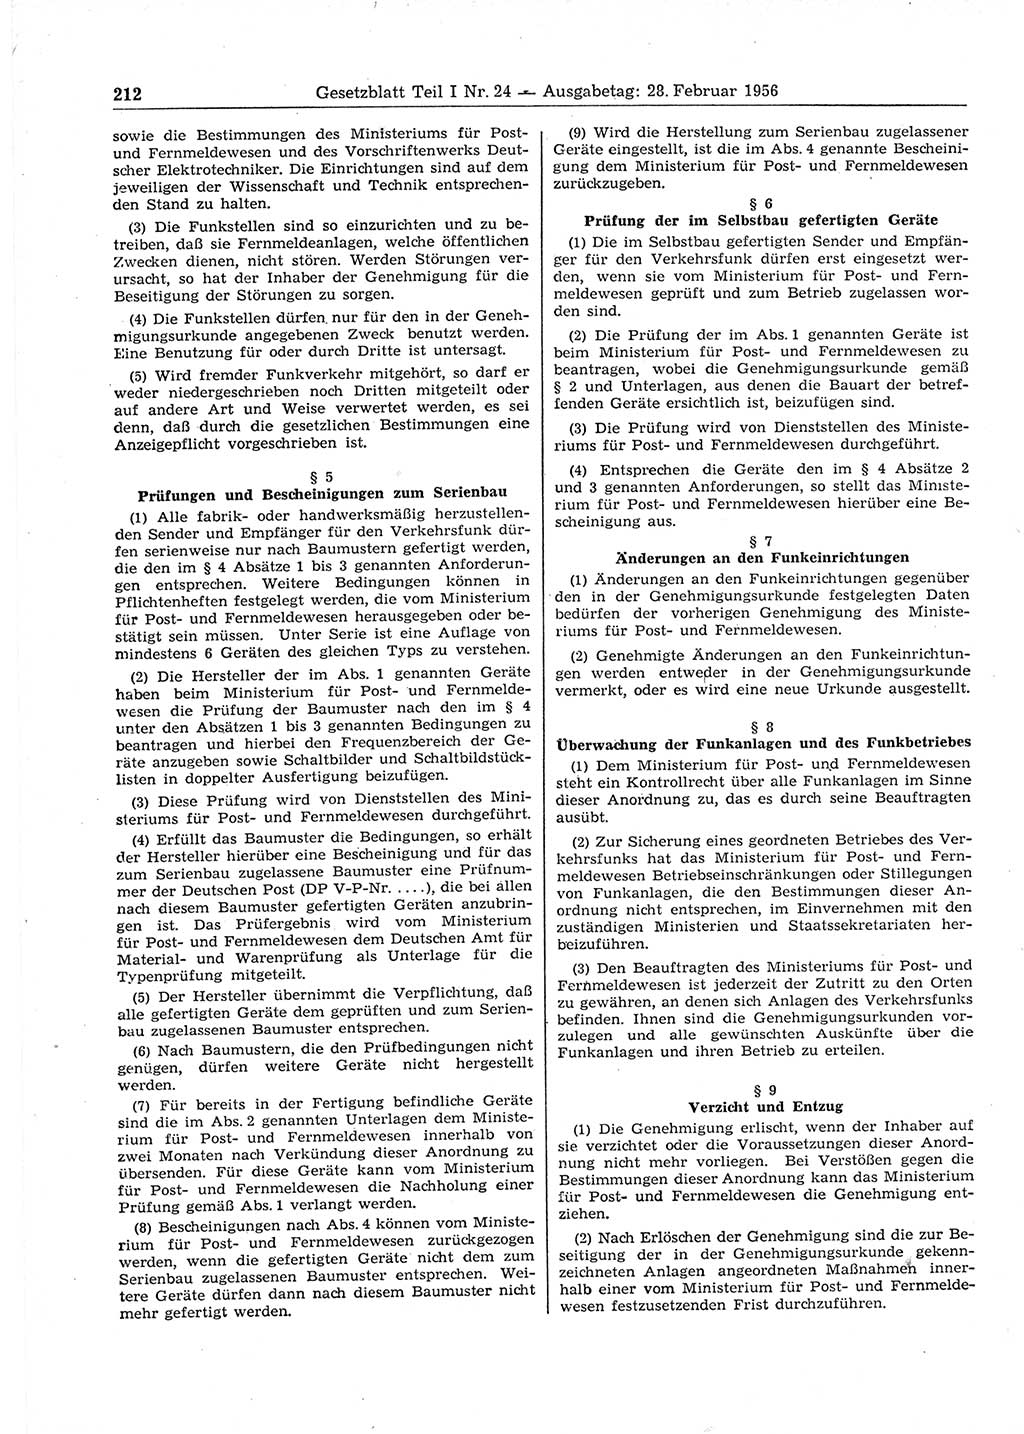 Gesetzblatt (GBl.) der Deutschen Demokratischen Republik (DDR) Teil Ⅰ 1956, Seite 212 (GBl. DDR Ⅰ 1956, S. 212)